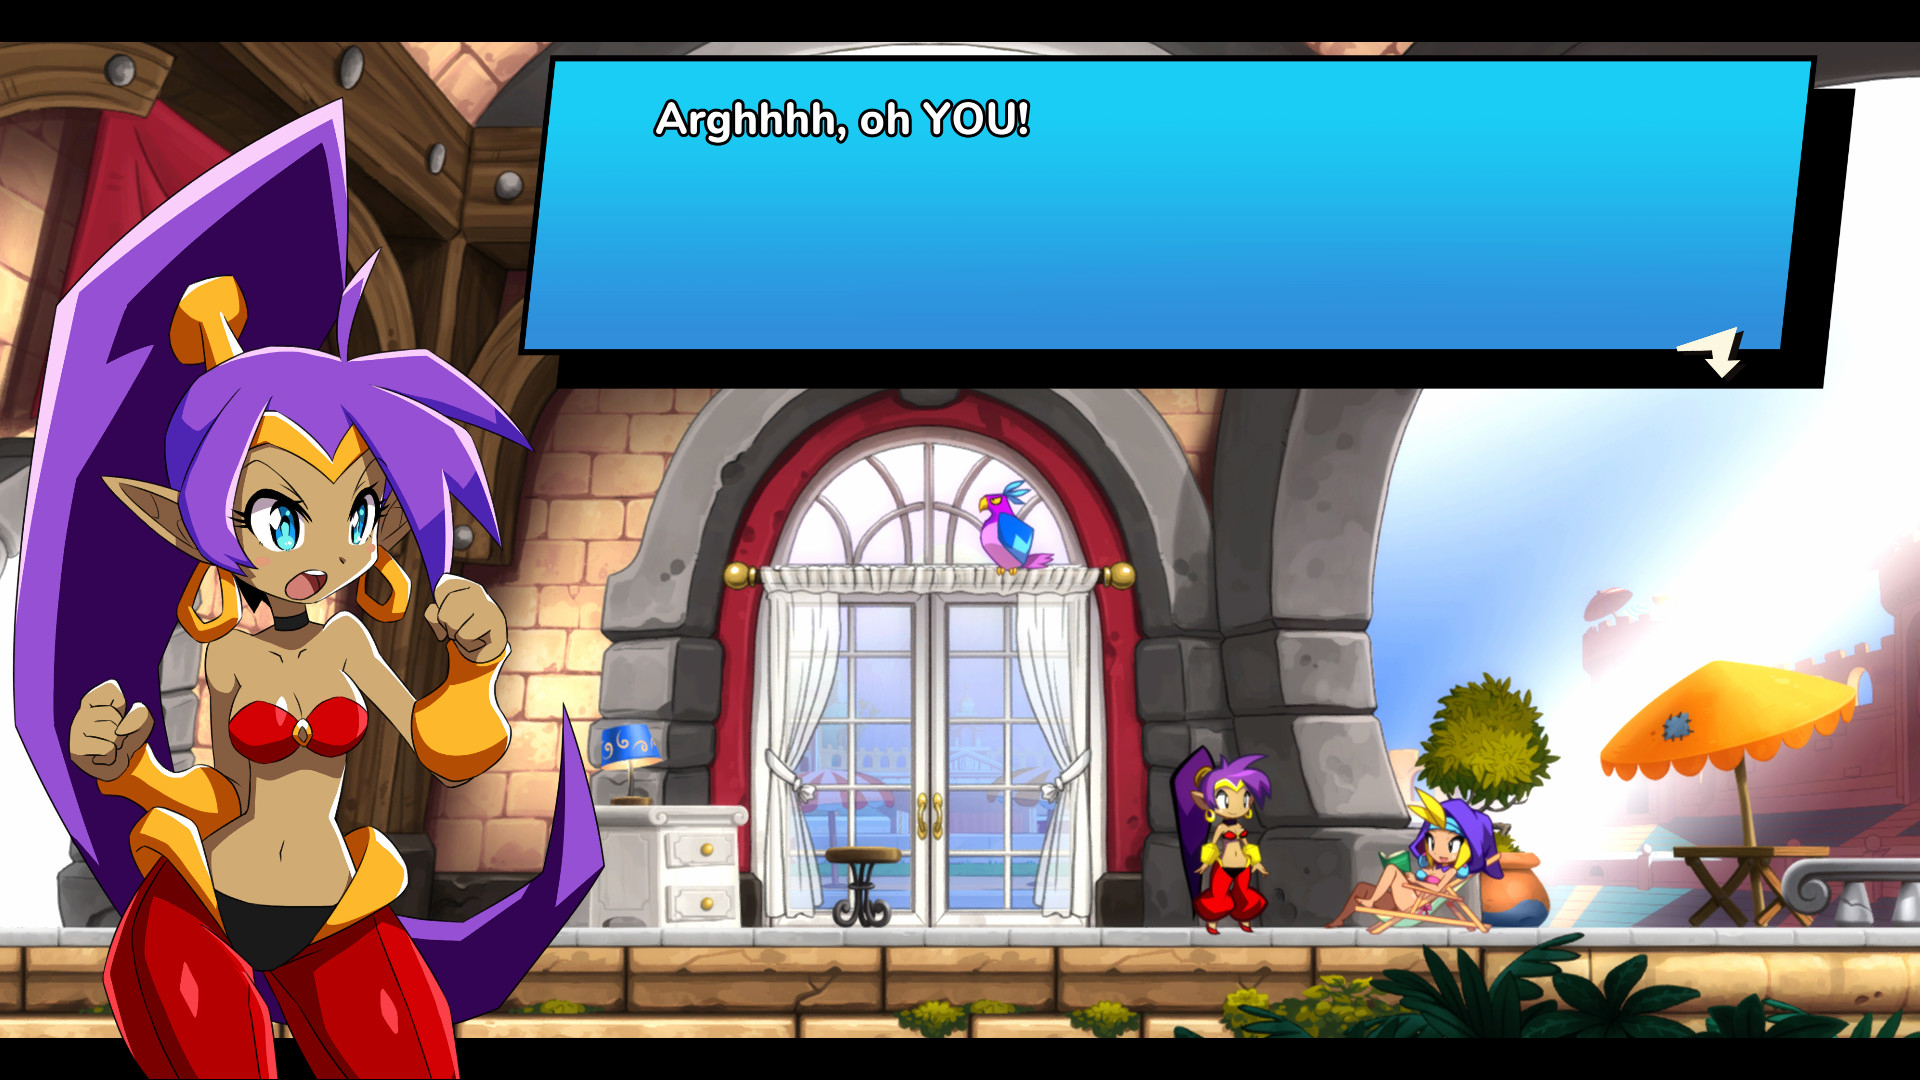 Скриншот из игры Shantae and the Seven Sirens под номером 2. Смотреть скрин...